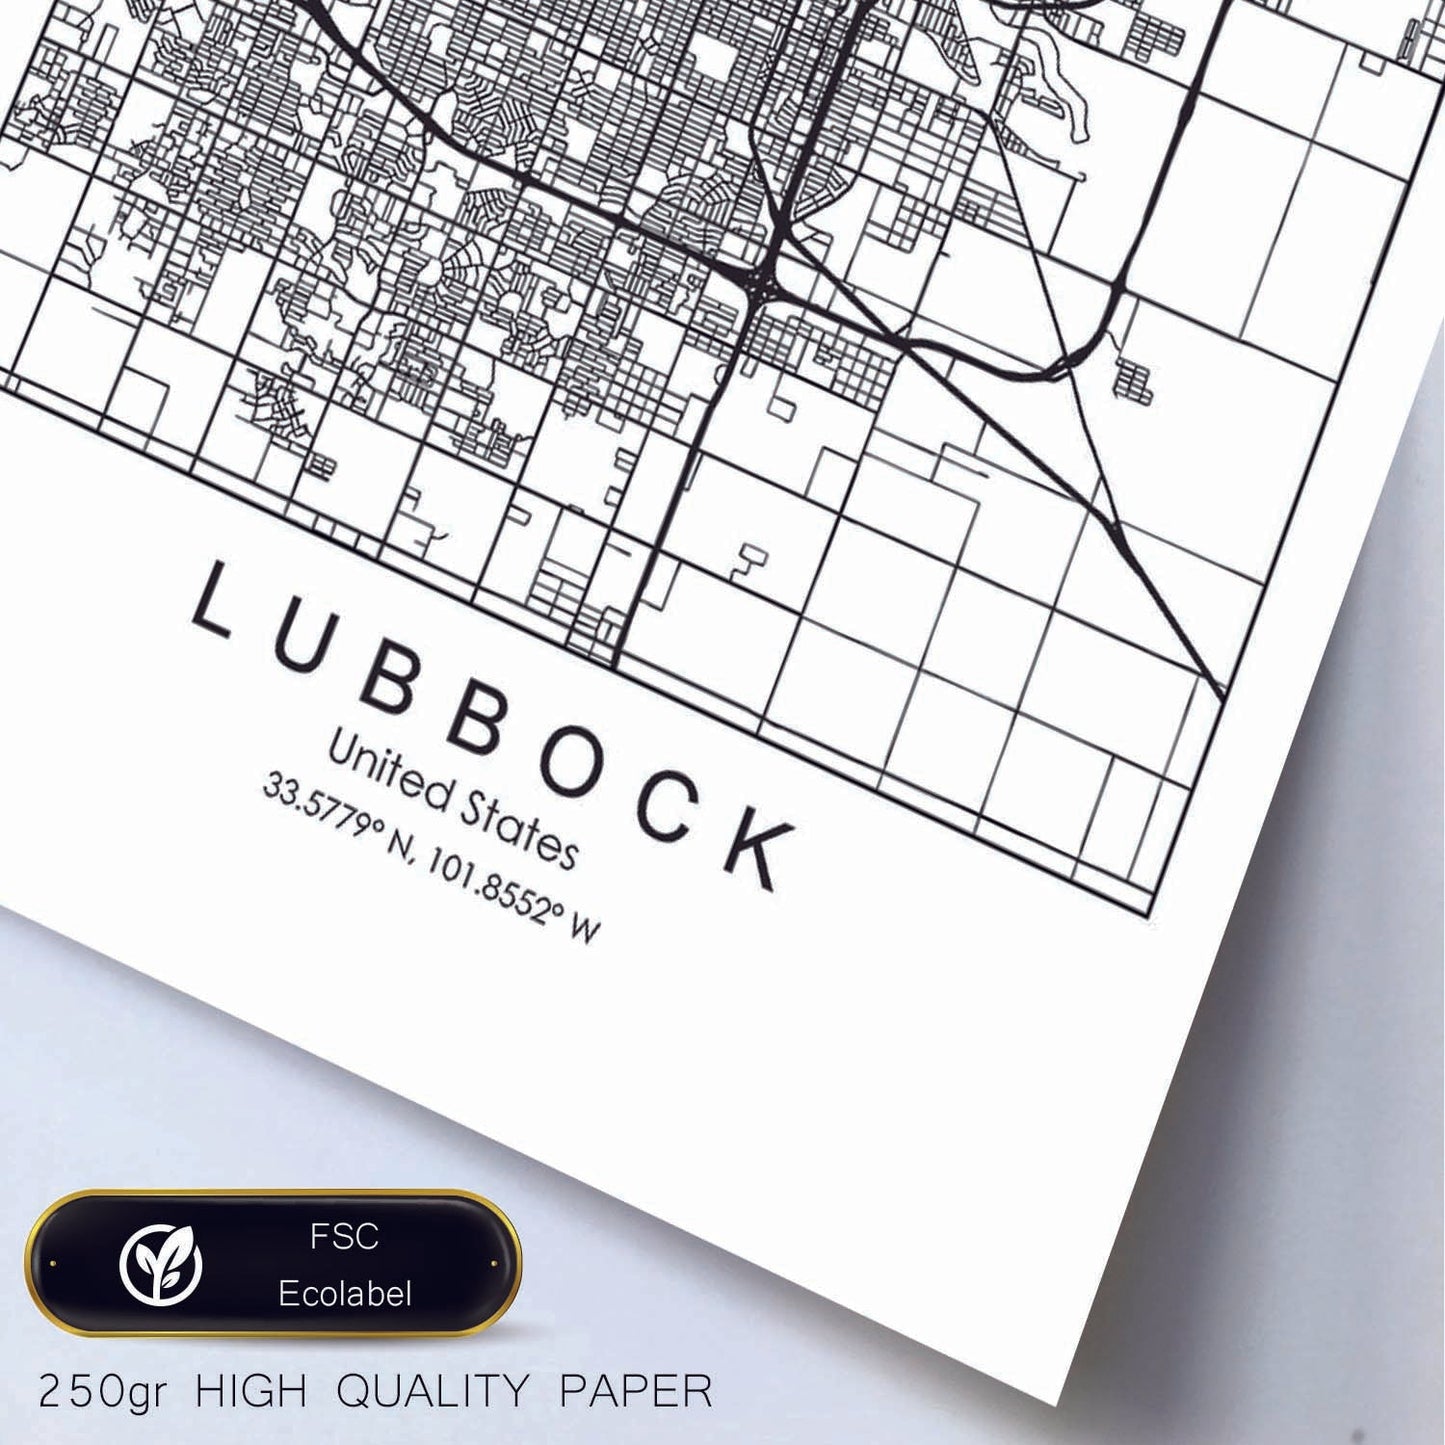 Poster con mapa de Lubbock. Lámina de Estados Unidos, con imágenes de mapas y carreteras-Artwork-Nacnic-Nacnic Estudio SL